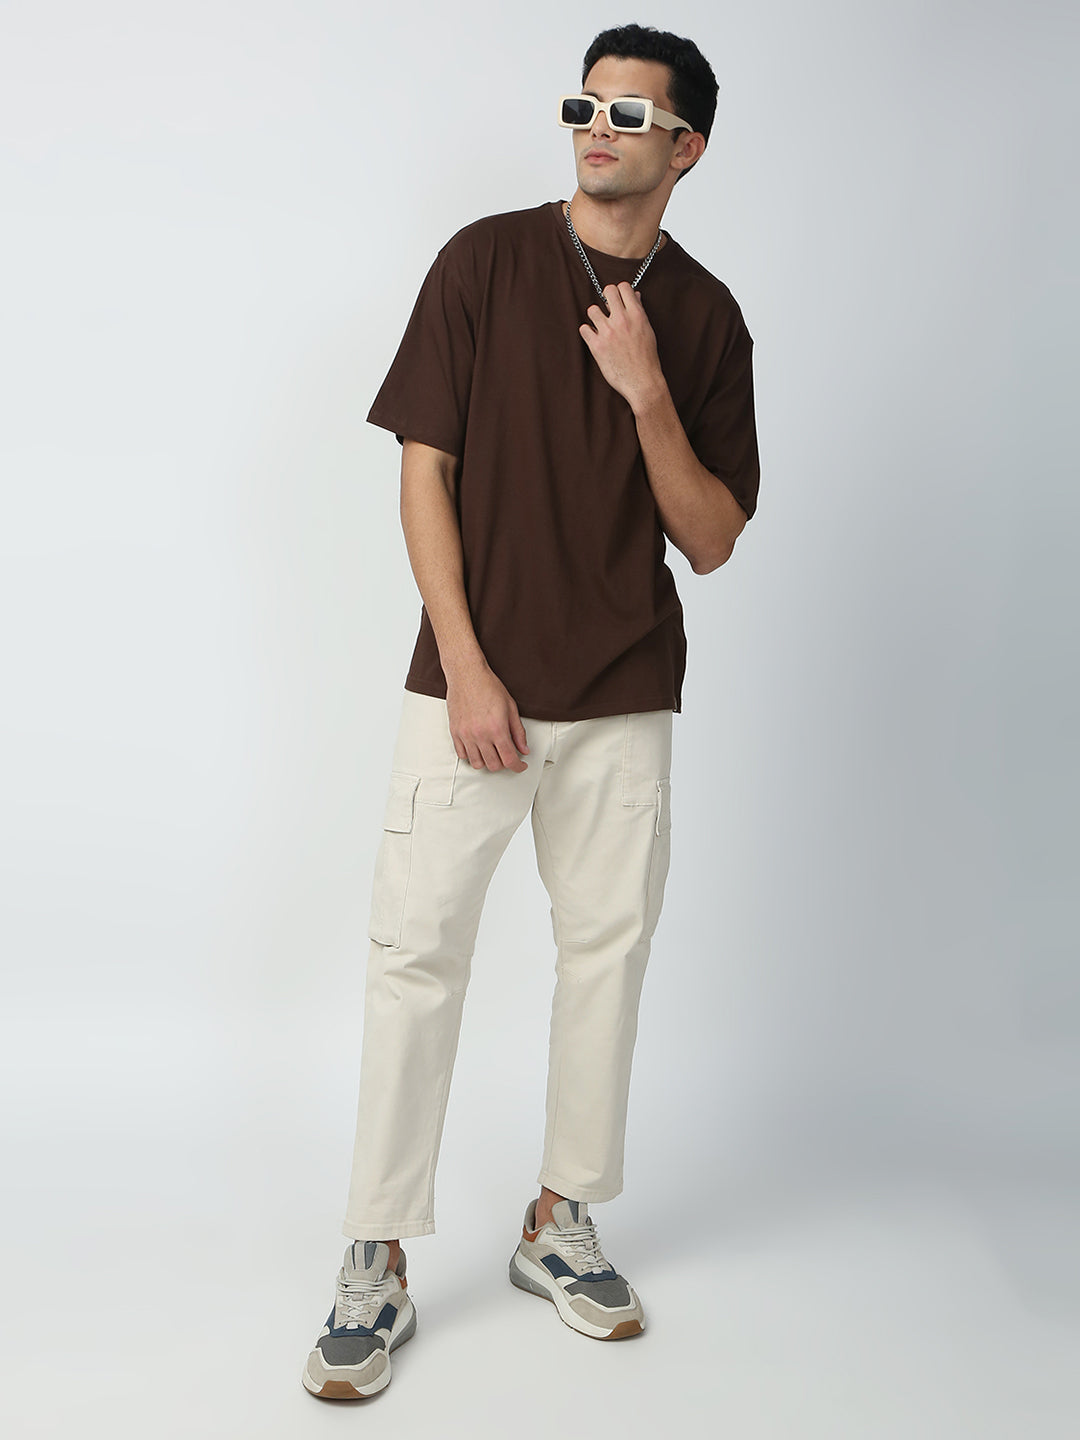 Buy Blamblack Men's Baggy Dark Brown Color Back Printed Round Neck T-Shirt